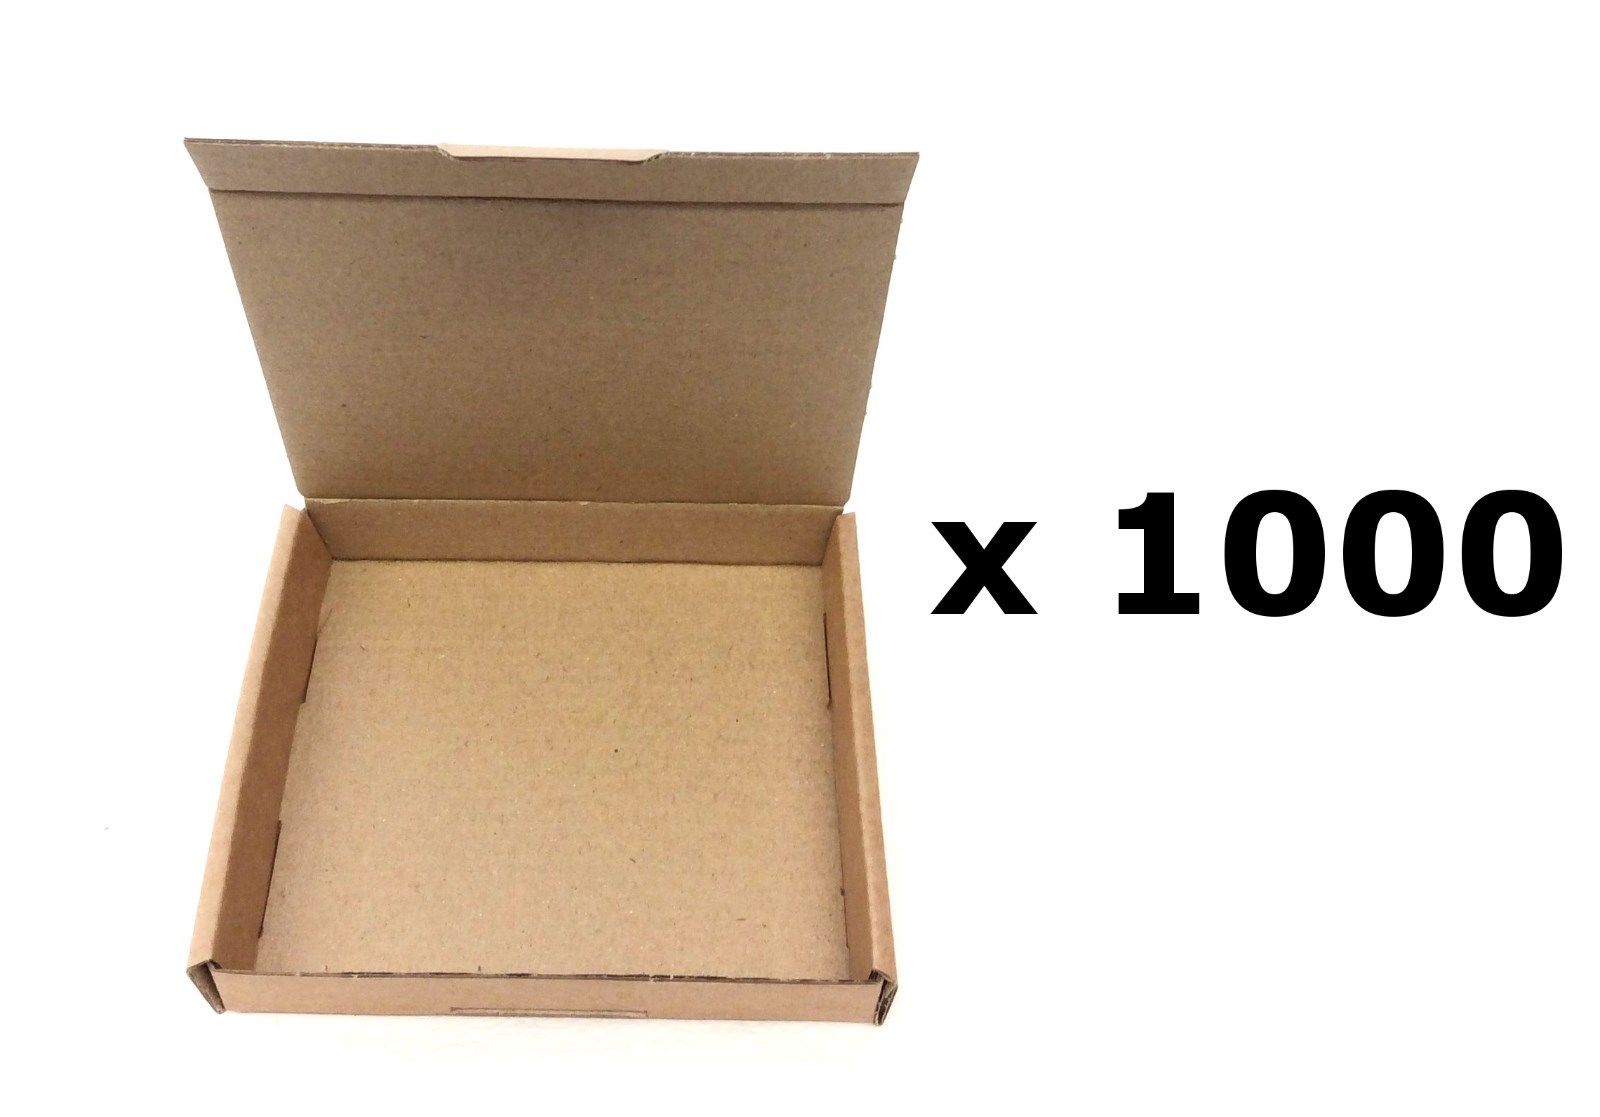 1000 Royal Mail Large Letter Mini 15g Postal Mailing Box - 101 x 101 x 20 mm